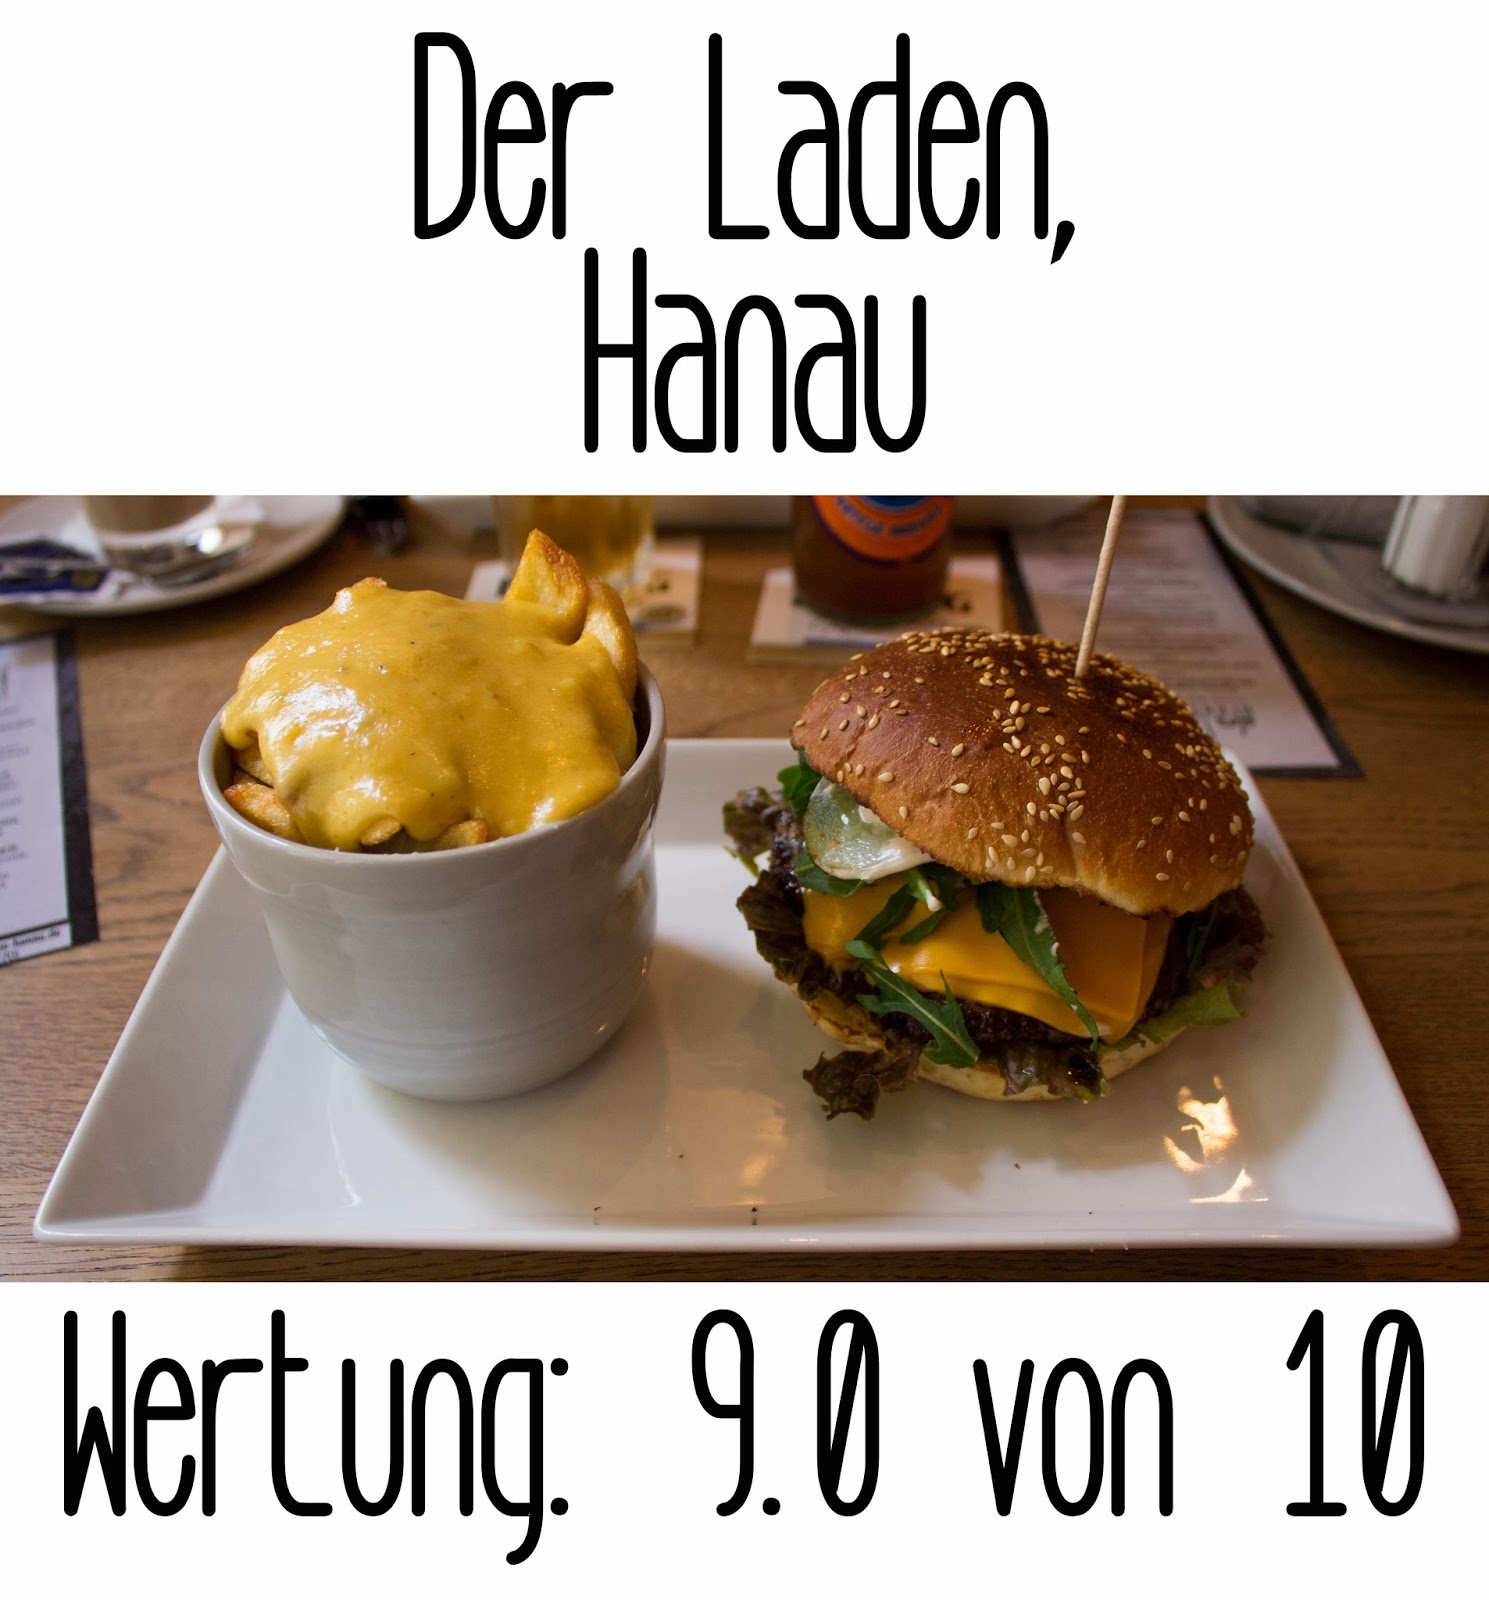 http://germanysbestburger.blogspot.de/2013/11/der-laden-hanau.html